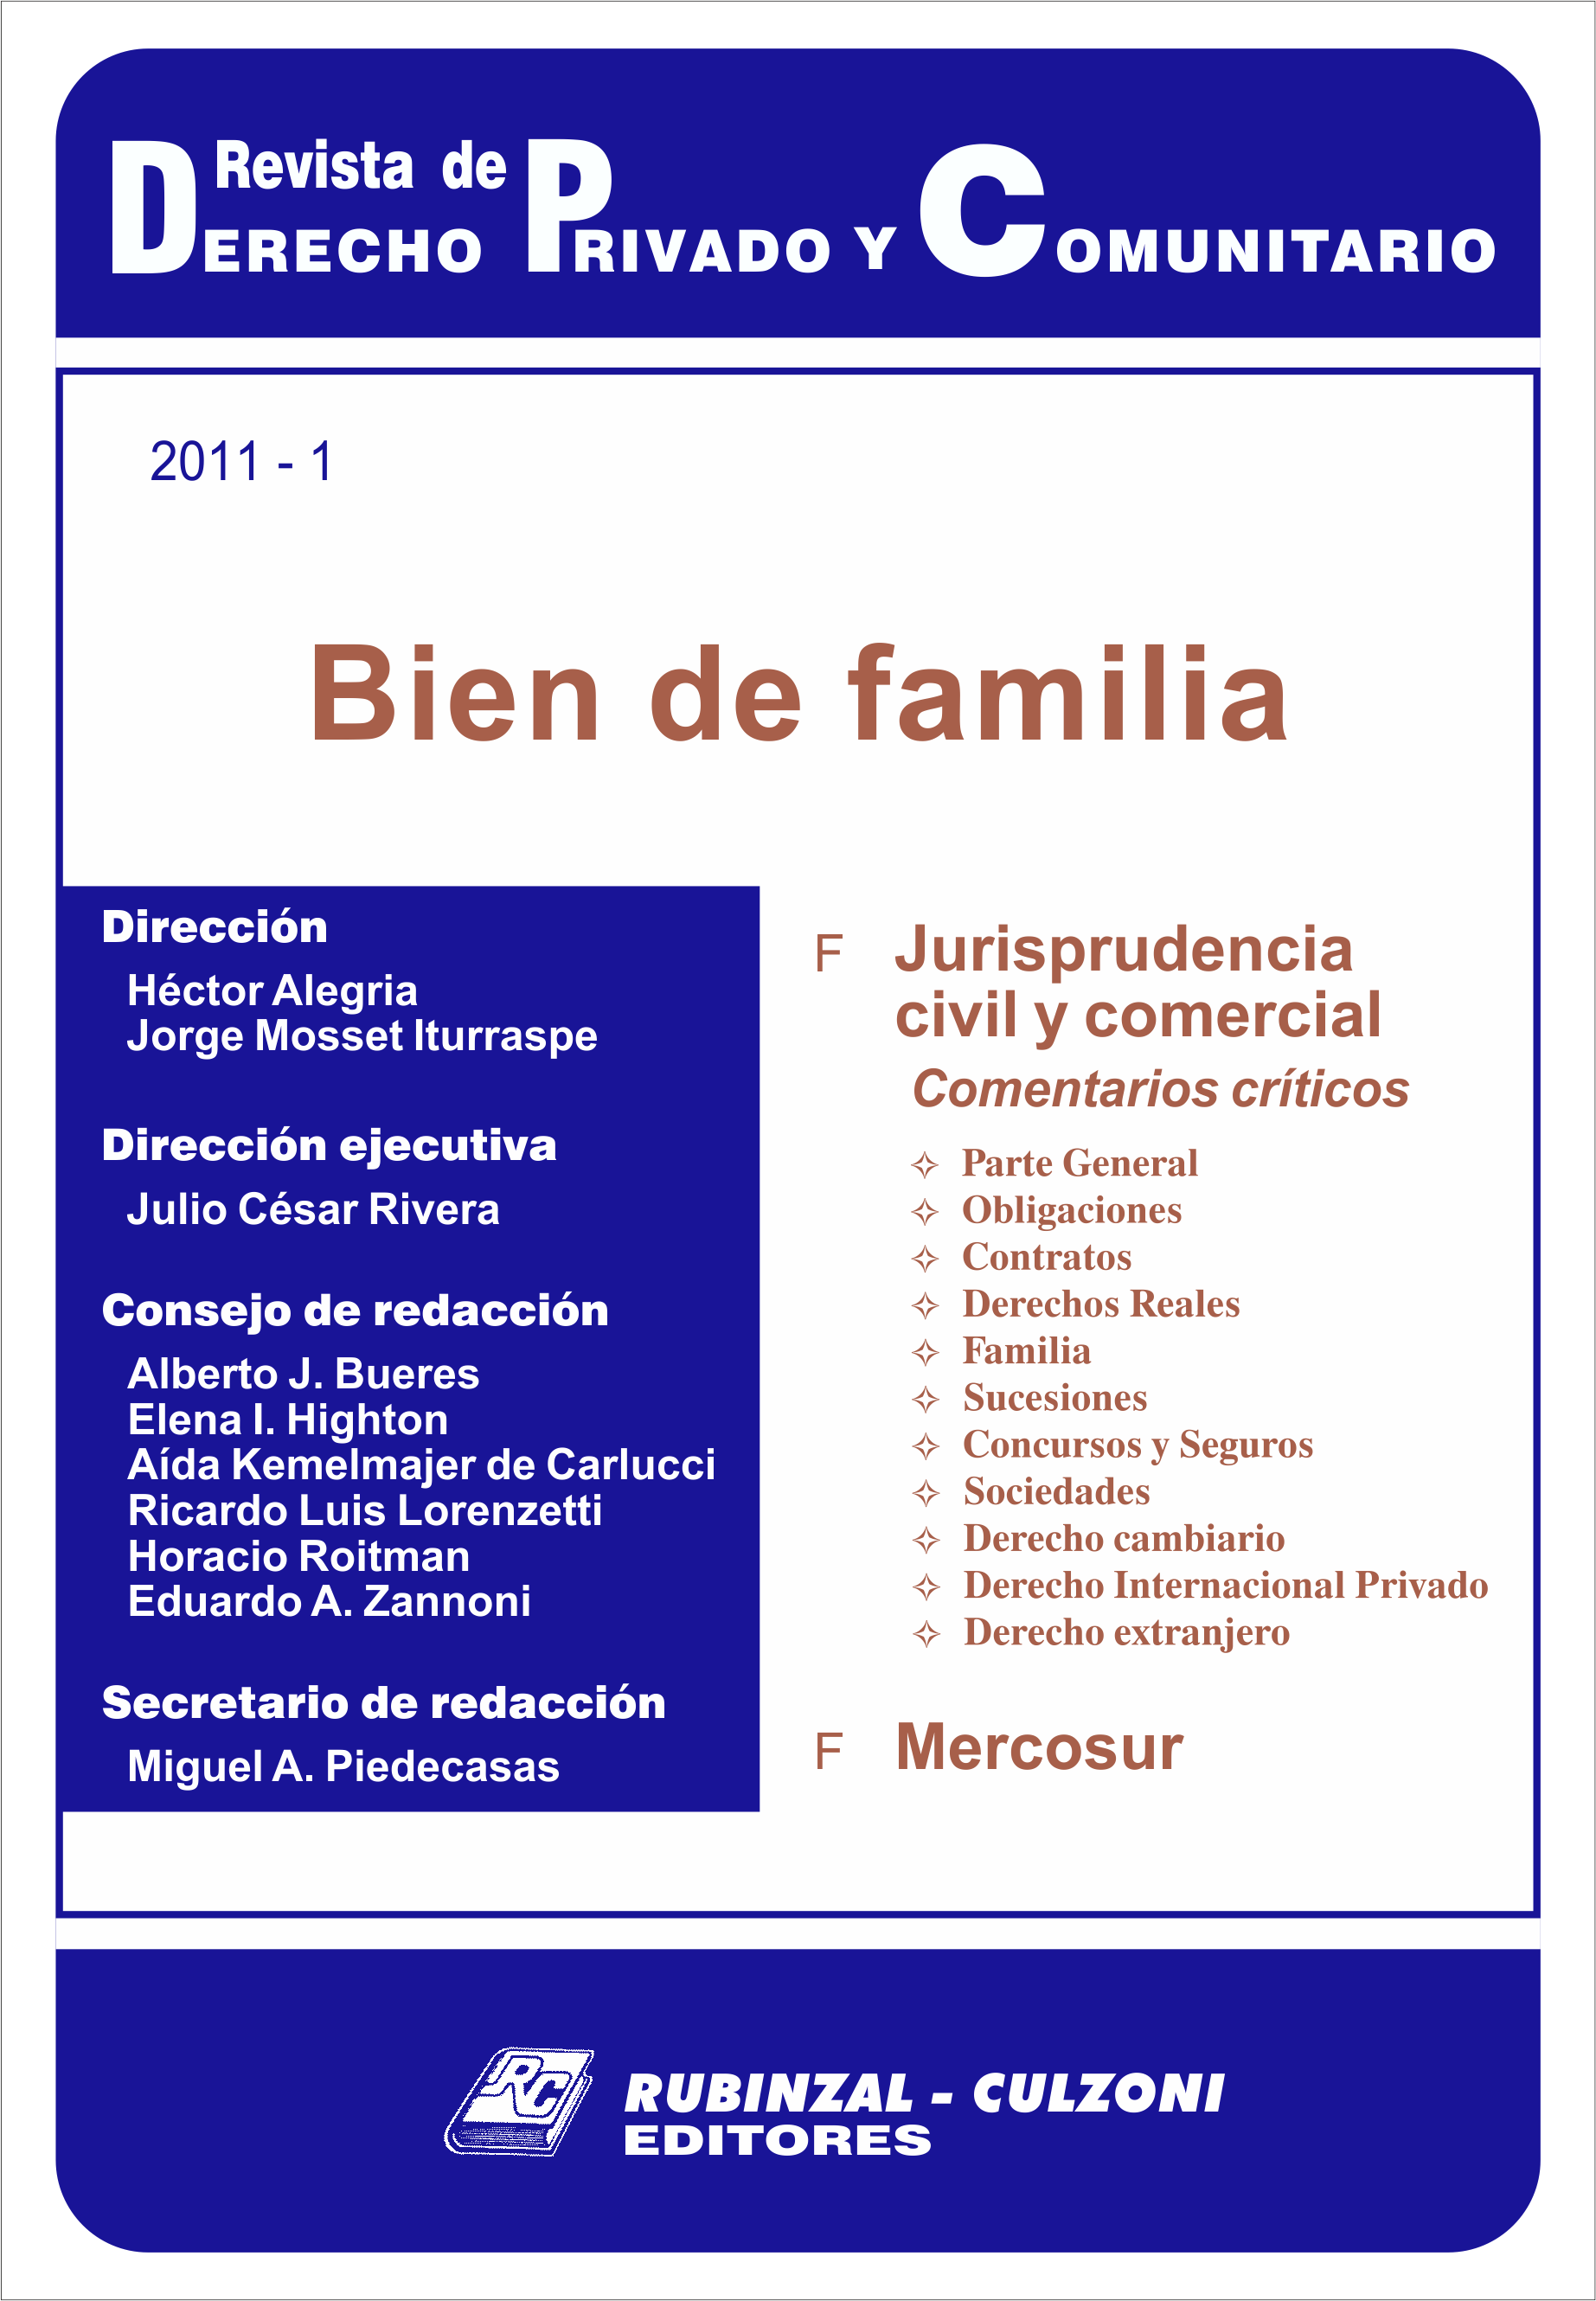 Revista de Derecho Privado y Comunitario - Bien de familia.